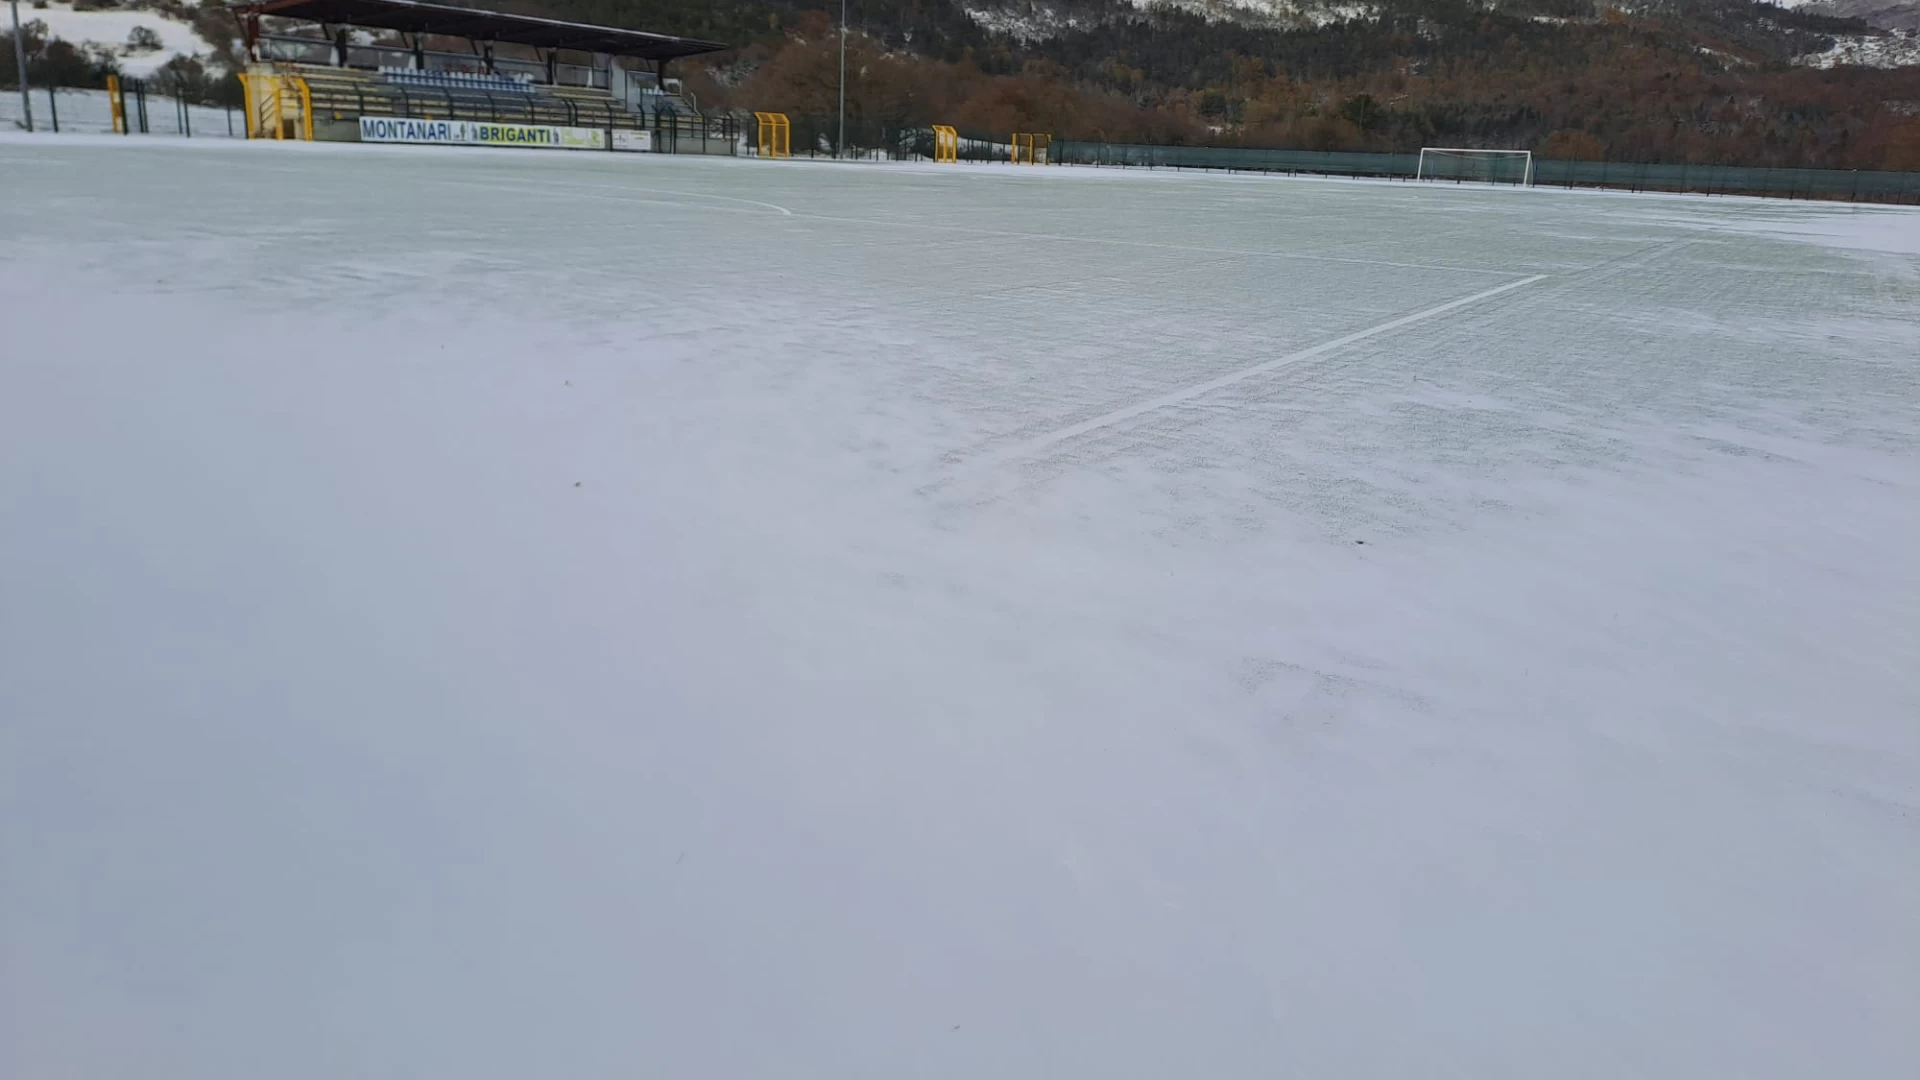 Serie D: stadio Di Tella impraticabile causa neve, rinviata al 6 dicembre Vastogirardi -Atletico Ascoli